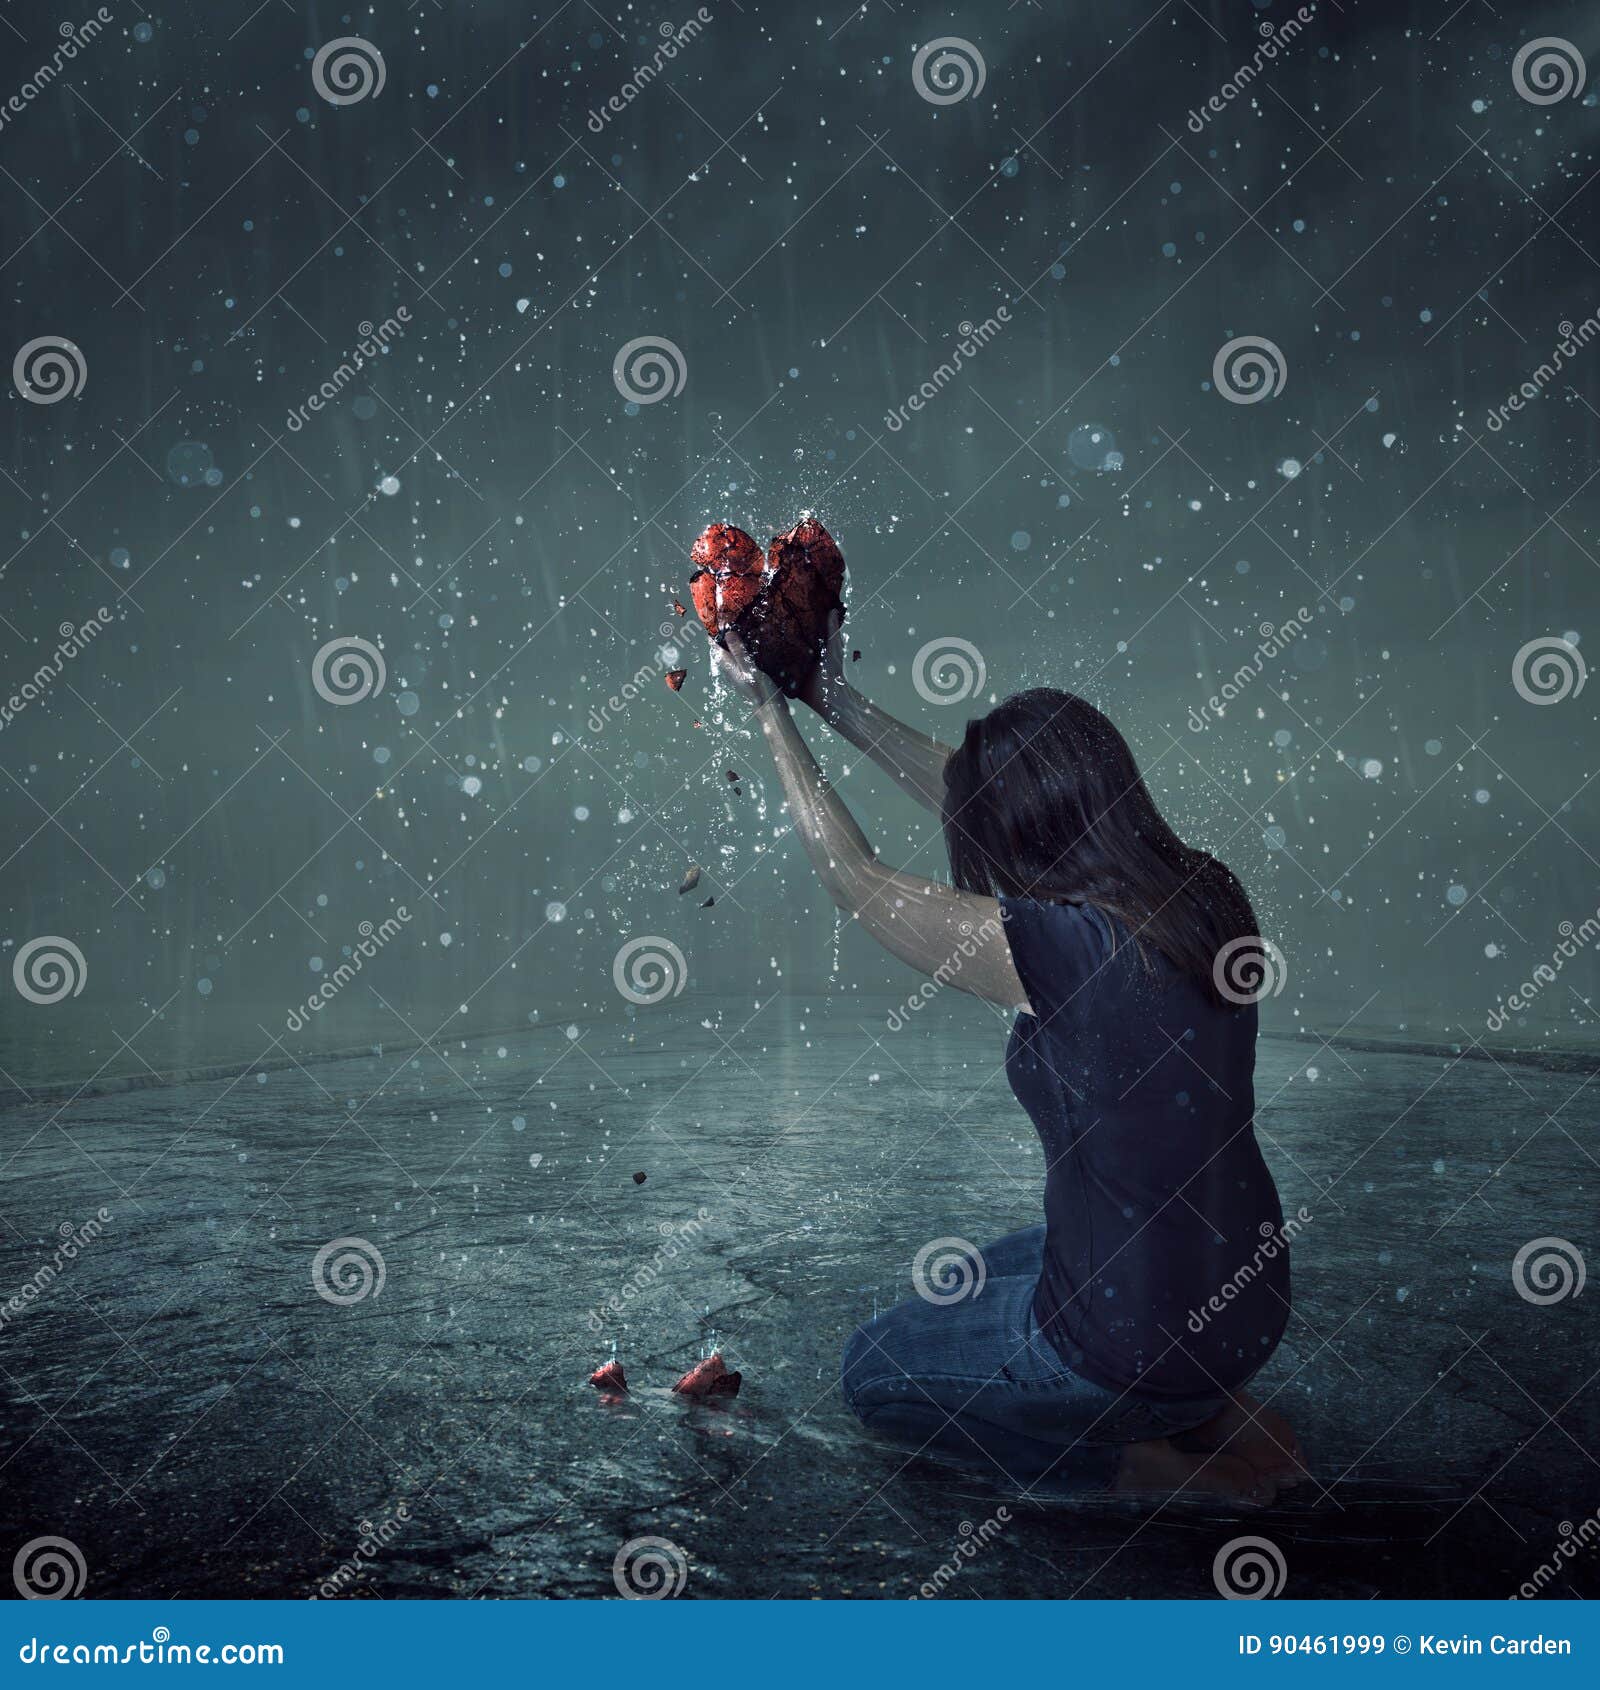 broken heart during rain storm